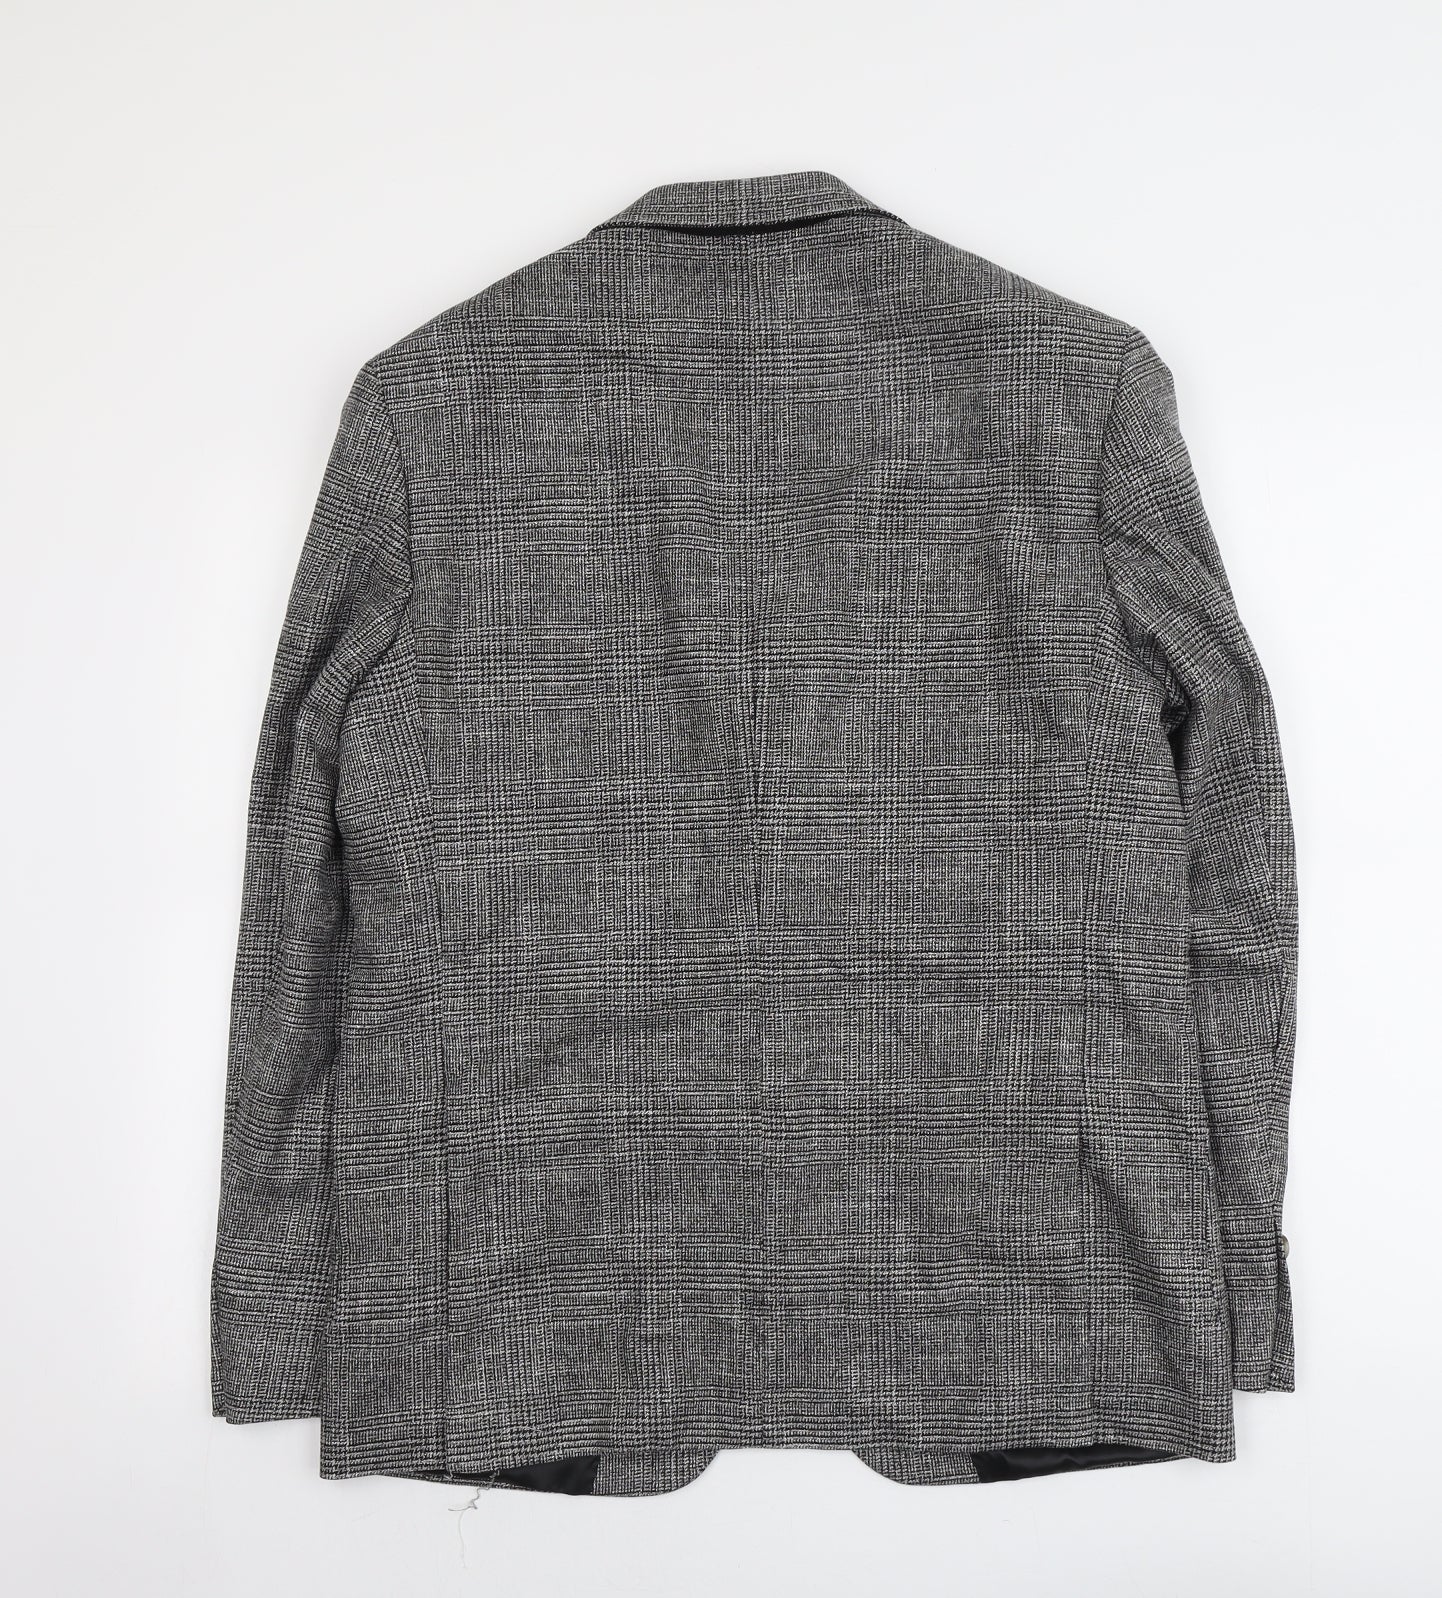 Marks and Spencer Mens Grey Plaid Viscose Jacket Suit Jacket Size 40 Regular